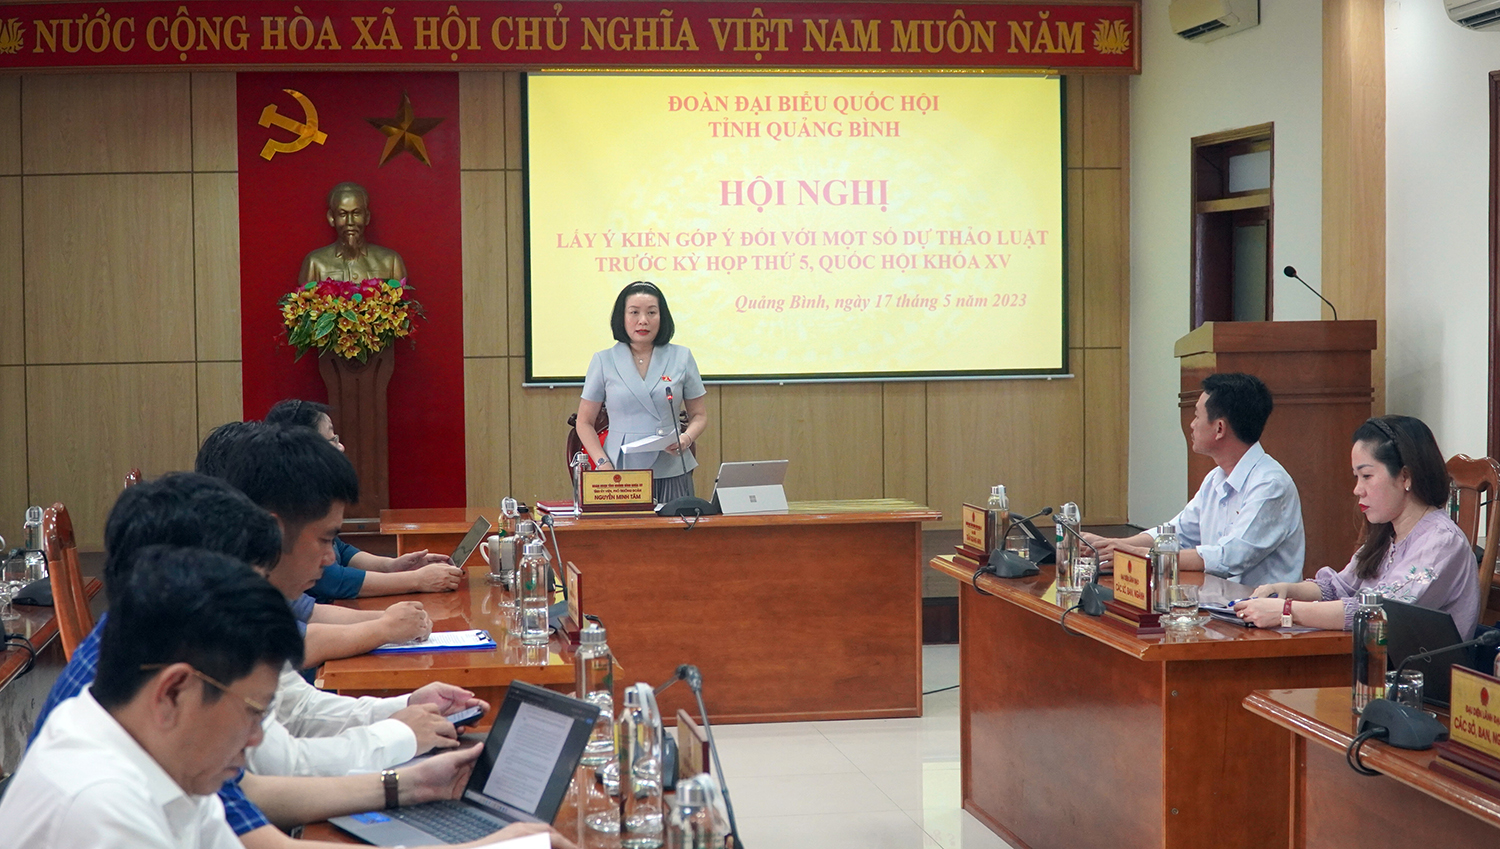 Đồng chí Nguyễn Minh Tâm, Tỉnh ủy viên, Phó trưởng đoàn chuyên trách Đoàn ĐBQH tỉnh phát biểu chỉ đạo tại hội nghị    